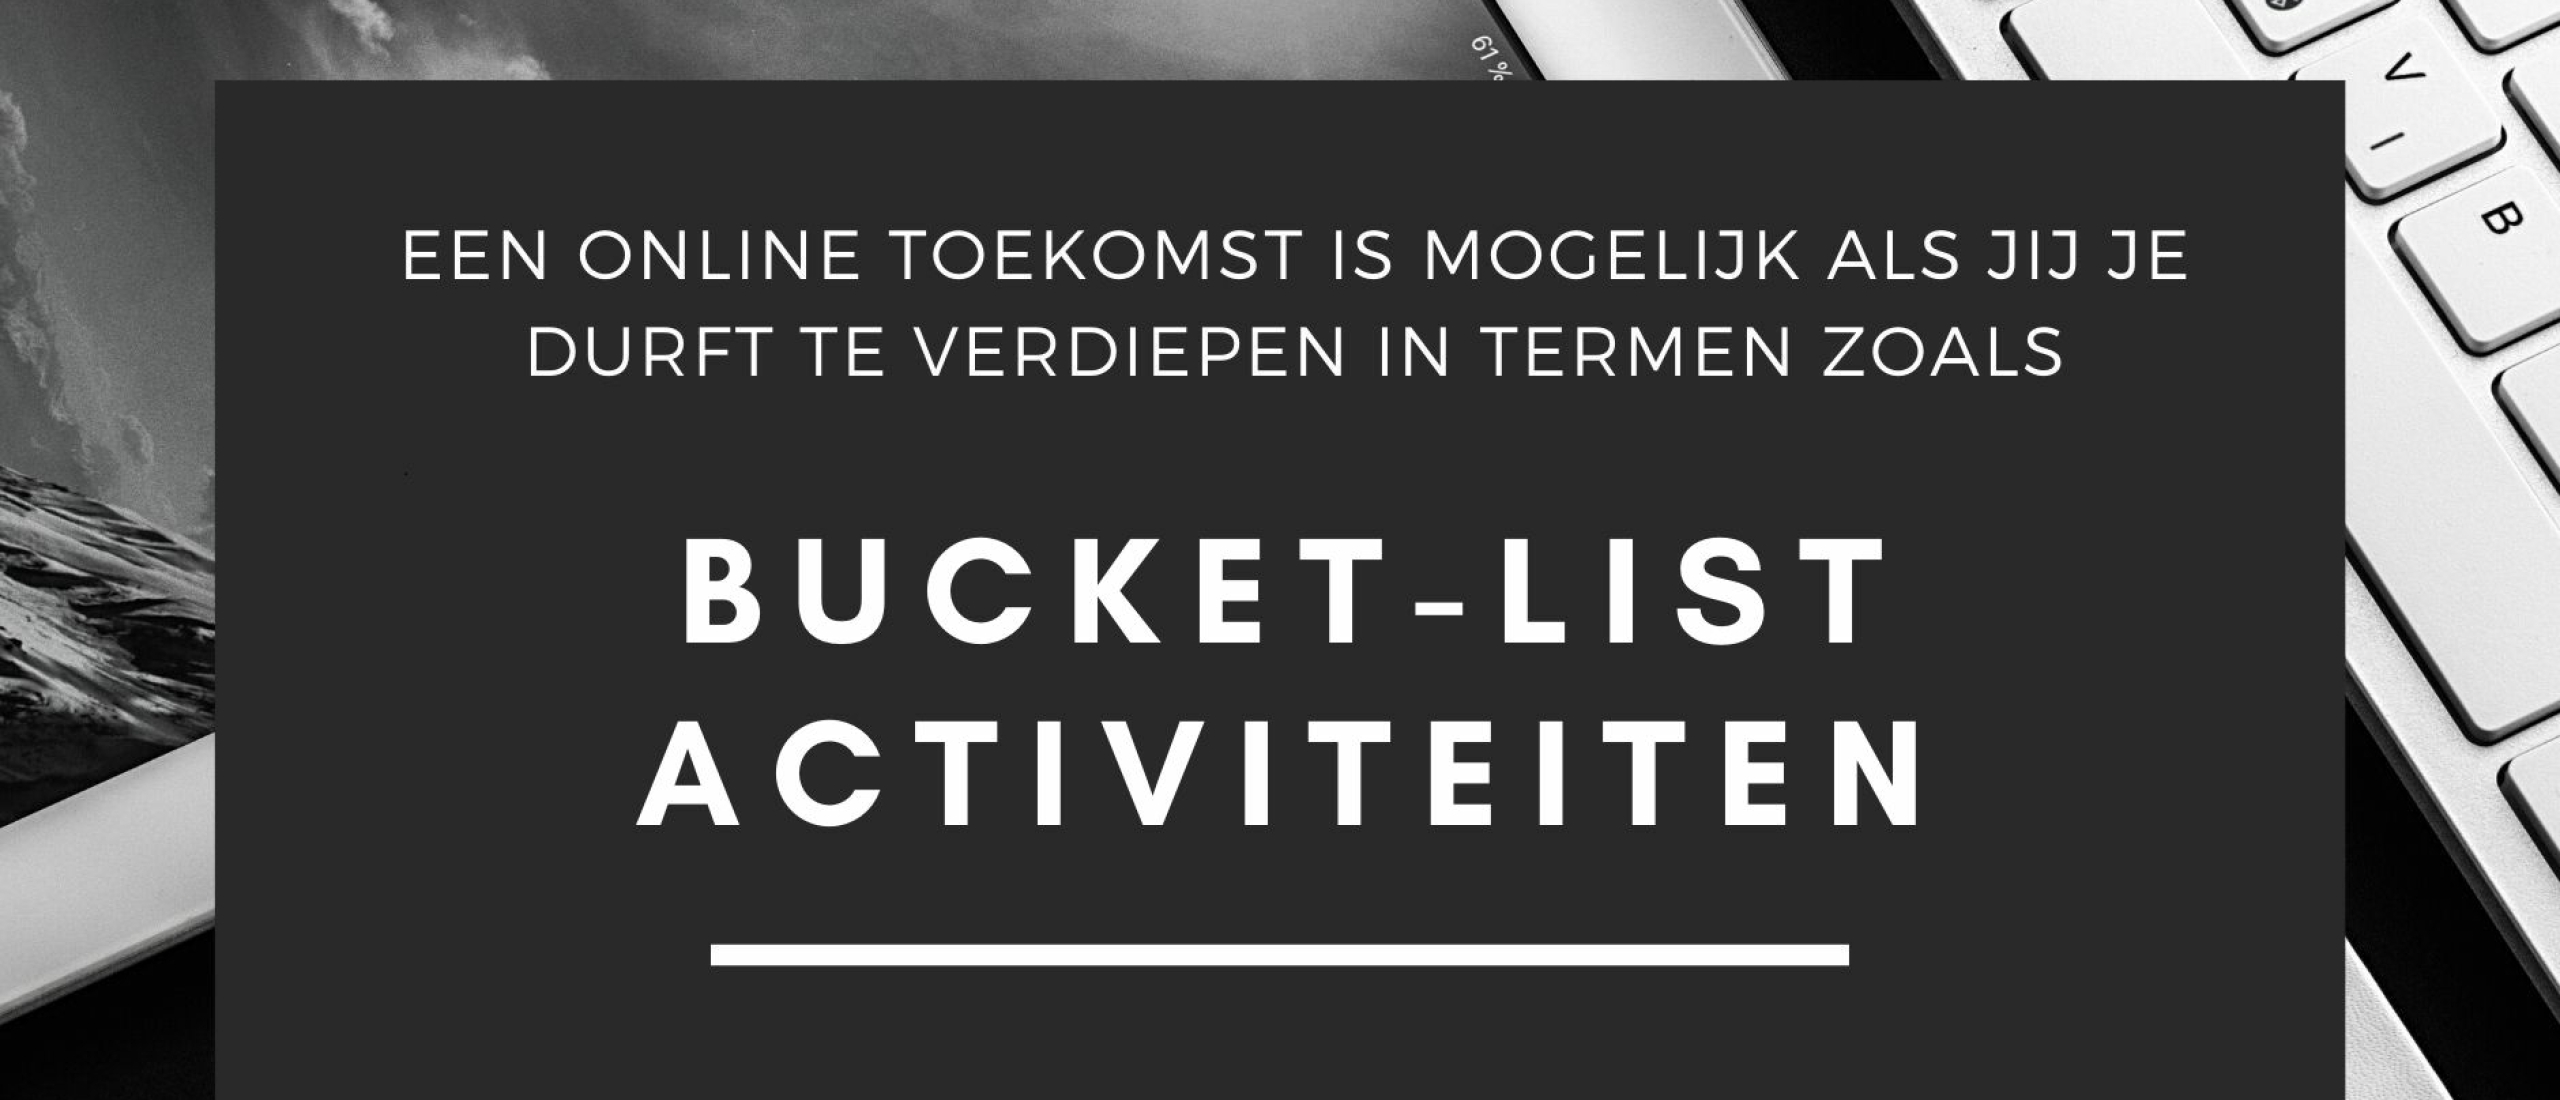 Bucket List Activiteiten